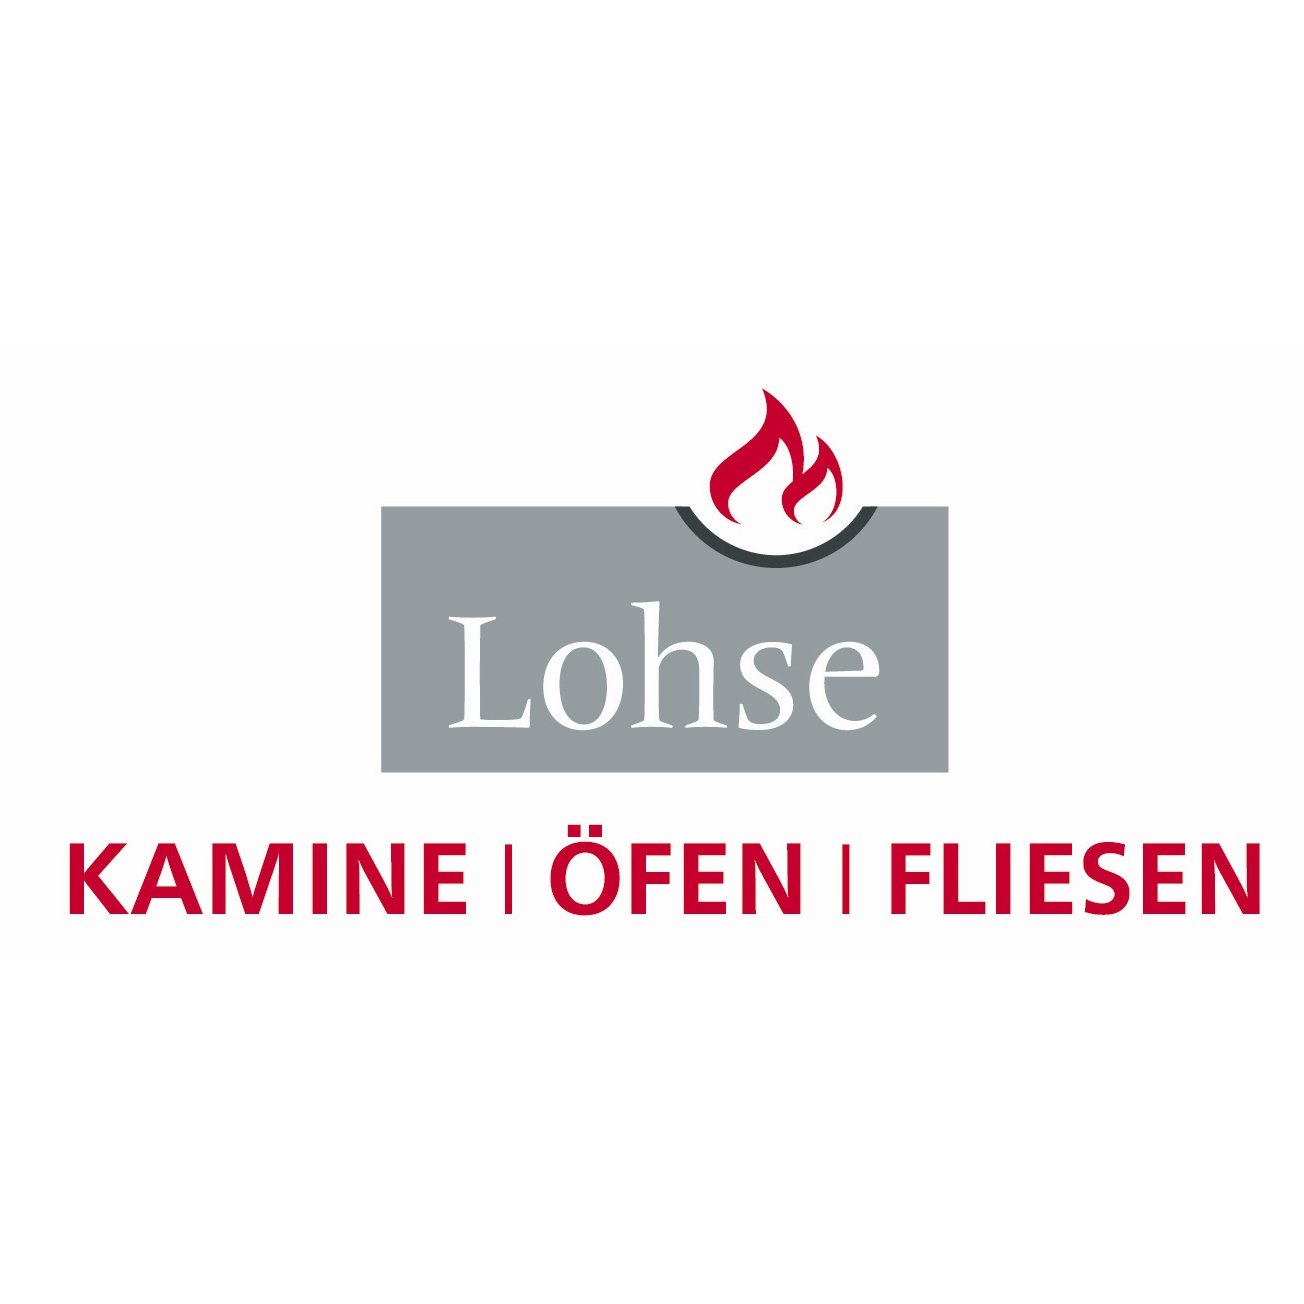 Lohse Kamine-Öfen-Fliesen Inh. Andreas Wache in Chemnitz - Logo